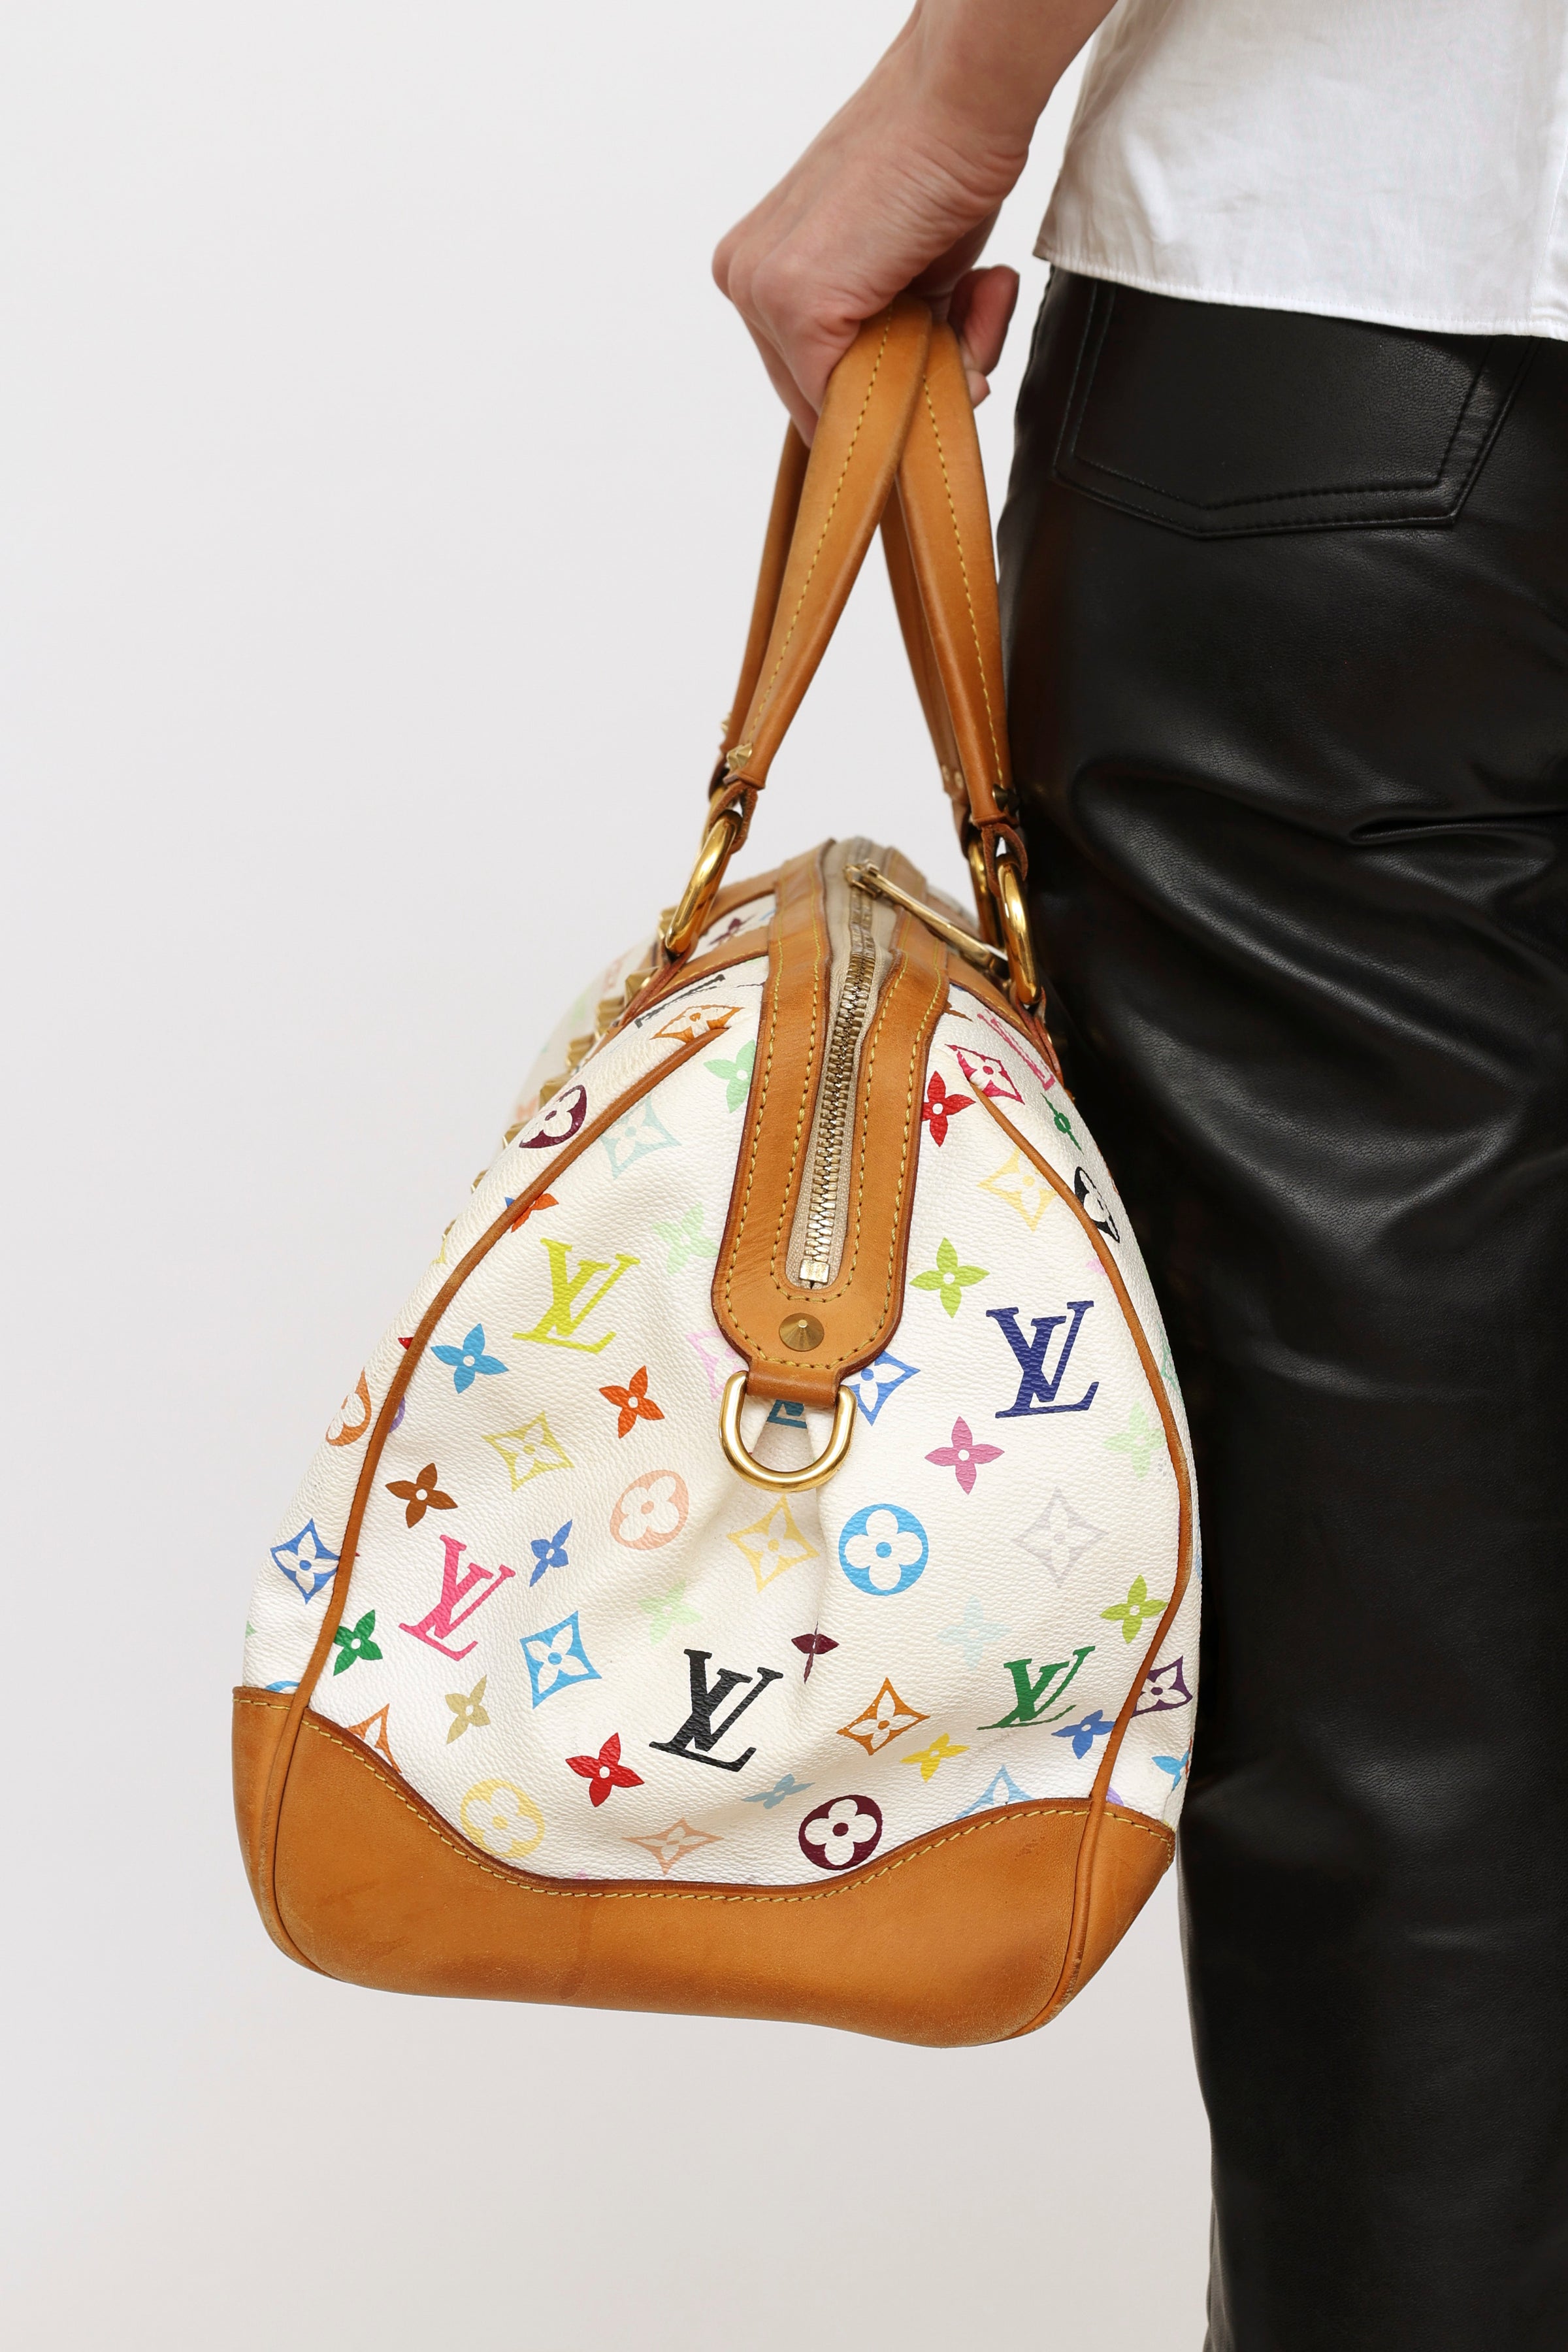 Louis Vuitton Black Multicolor Monogram Courtney GM Bag